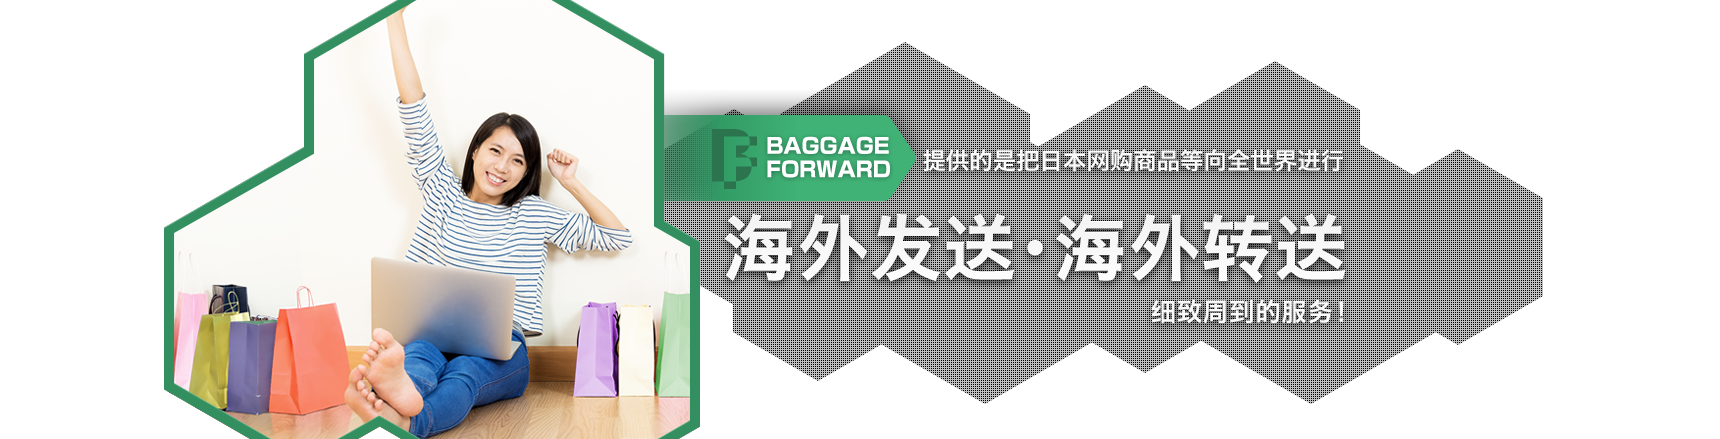 BAGGAGE FORWARD提供的是把日本网购商品等向全世界进行海外发送・海外转送细致周到的服务